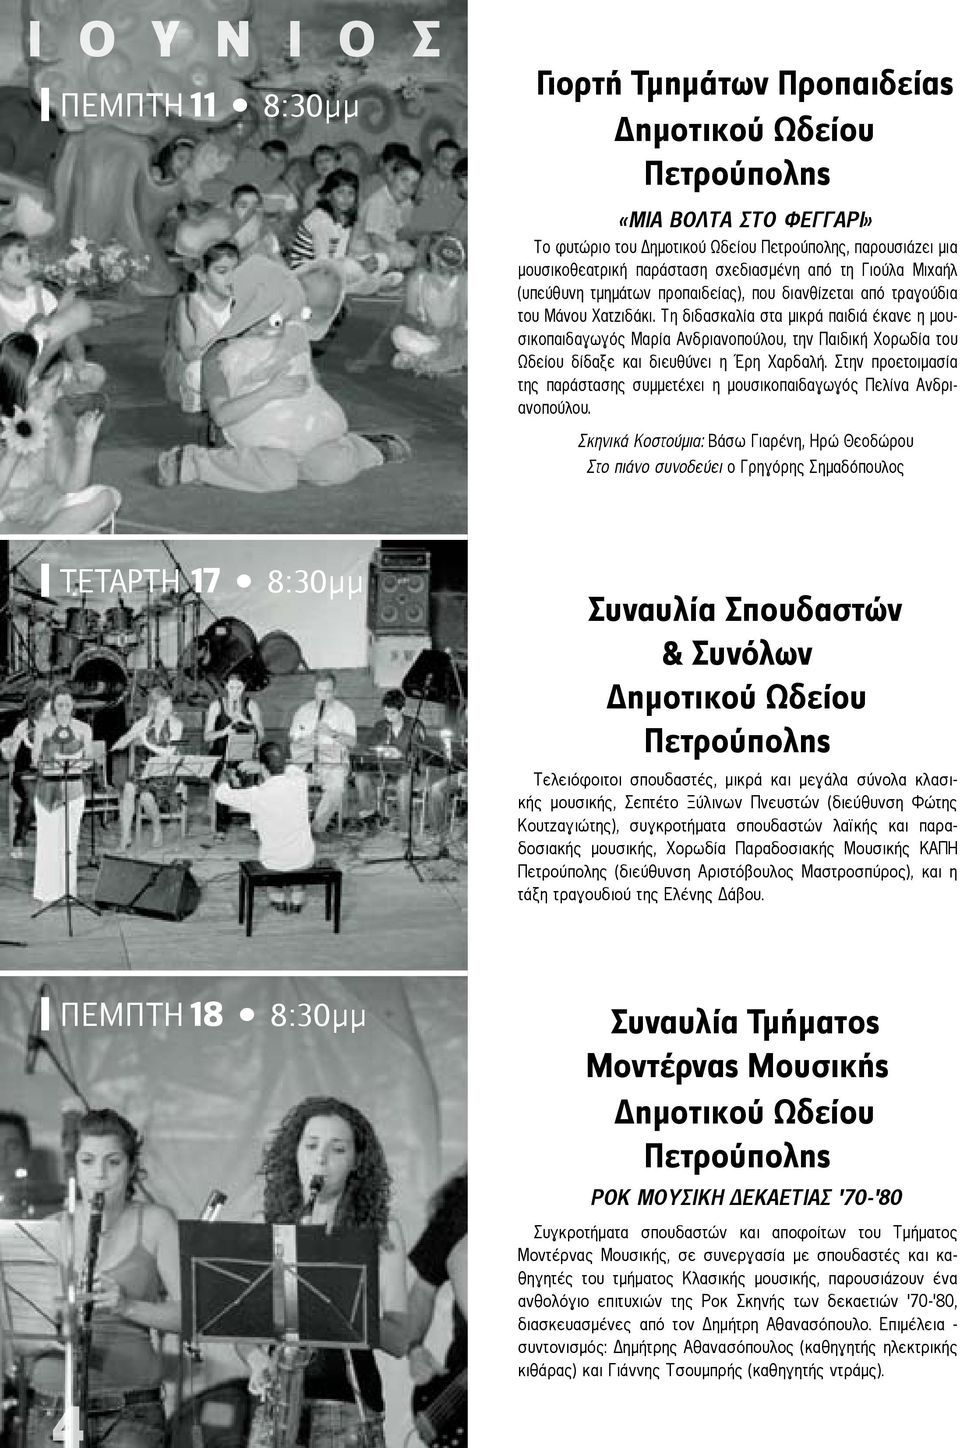 Τη διδασκαλία στα μικρά παιδιά έκανε η μουσικοπαιδαγωγός Μαρία Ανδριανοπούλου, την Παιδική Χορωδία του Ωδείου δίδαξε και διευθύνει η Έρη Χαρδαλή.